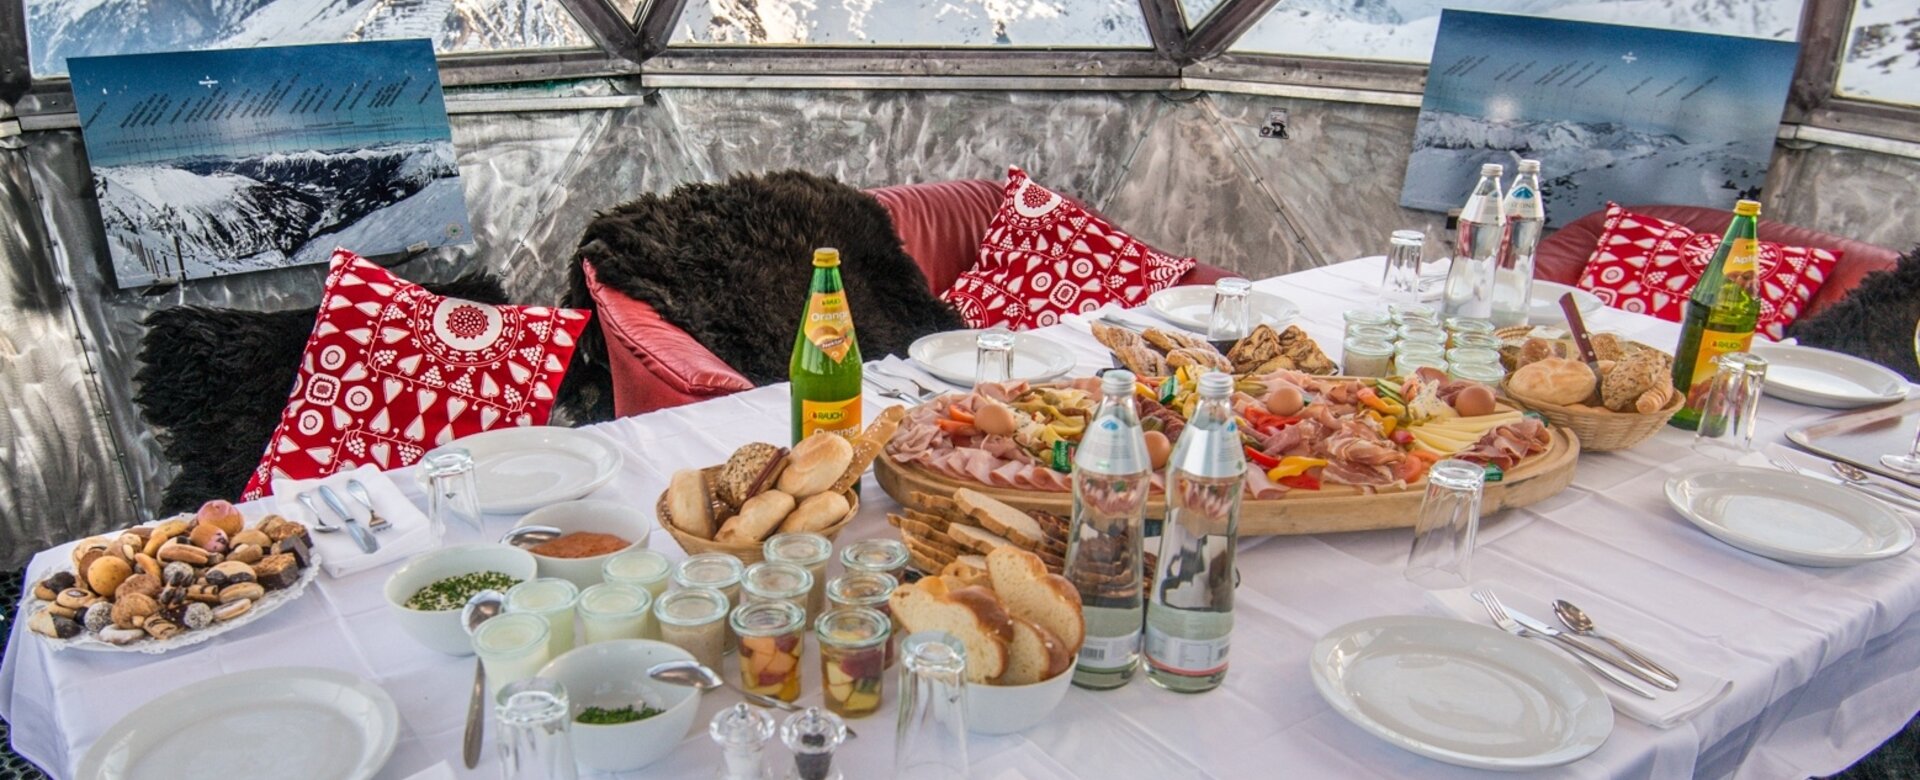 Voll gedeckter Frühstückstisch in einer Aluminiumkupel und mit Aussicht auf die schneebedeckten Berge | © Gasteinertal Tourismus GmbH, Marktl